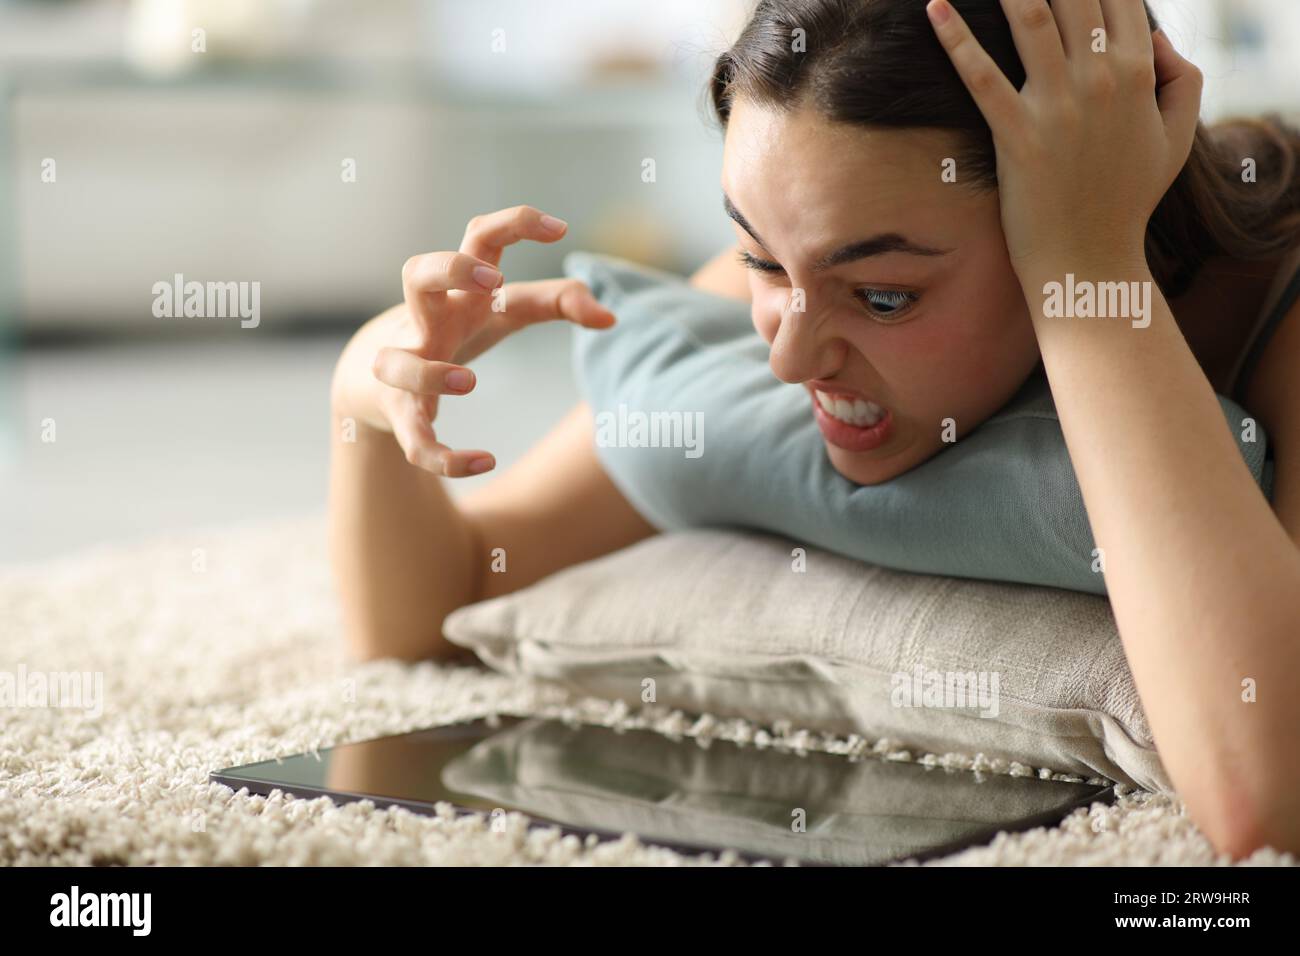 Verärgerte Frau, die zu Hause auf dem Boden liegt und den Inhalt des Tablets überprüft Stockfoto